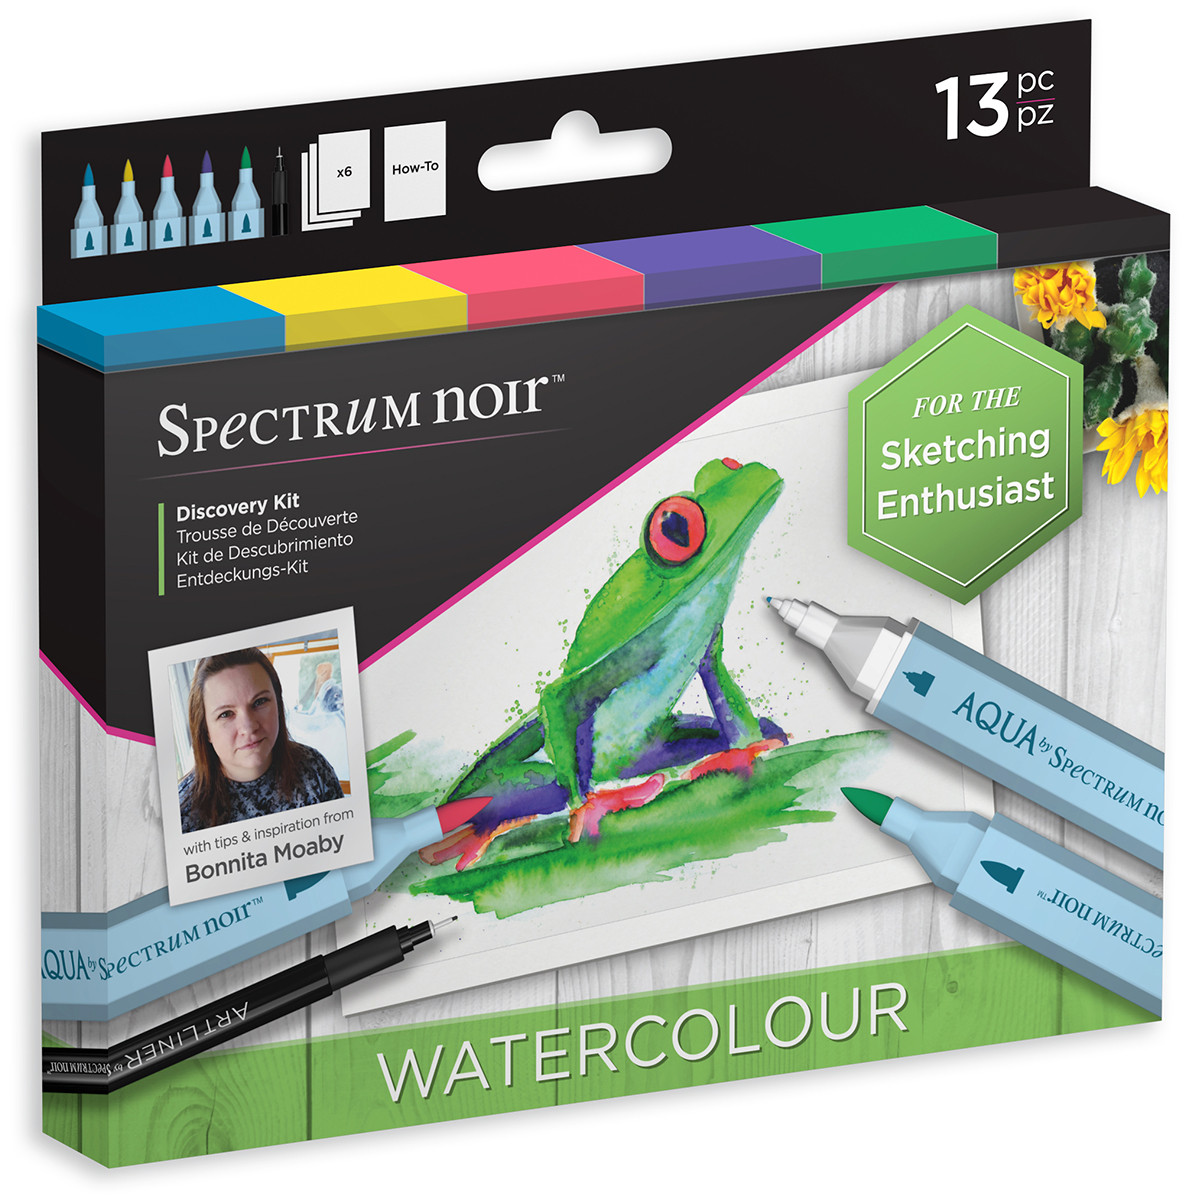 Spectrum Noir Discovery Kit - Watercolour